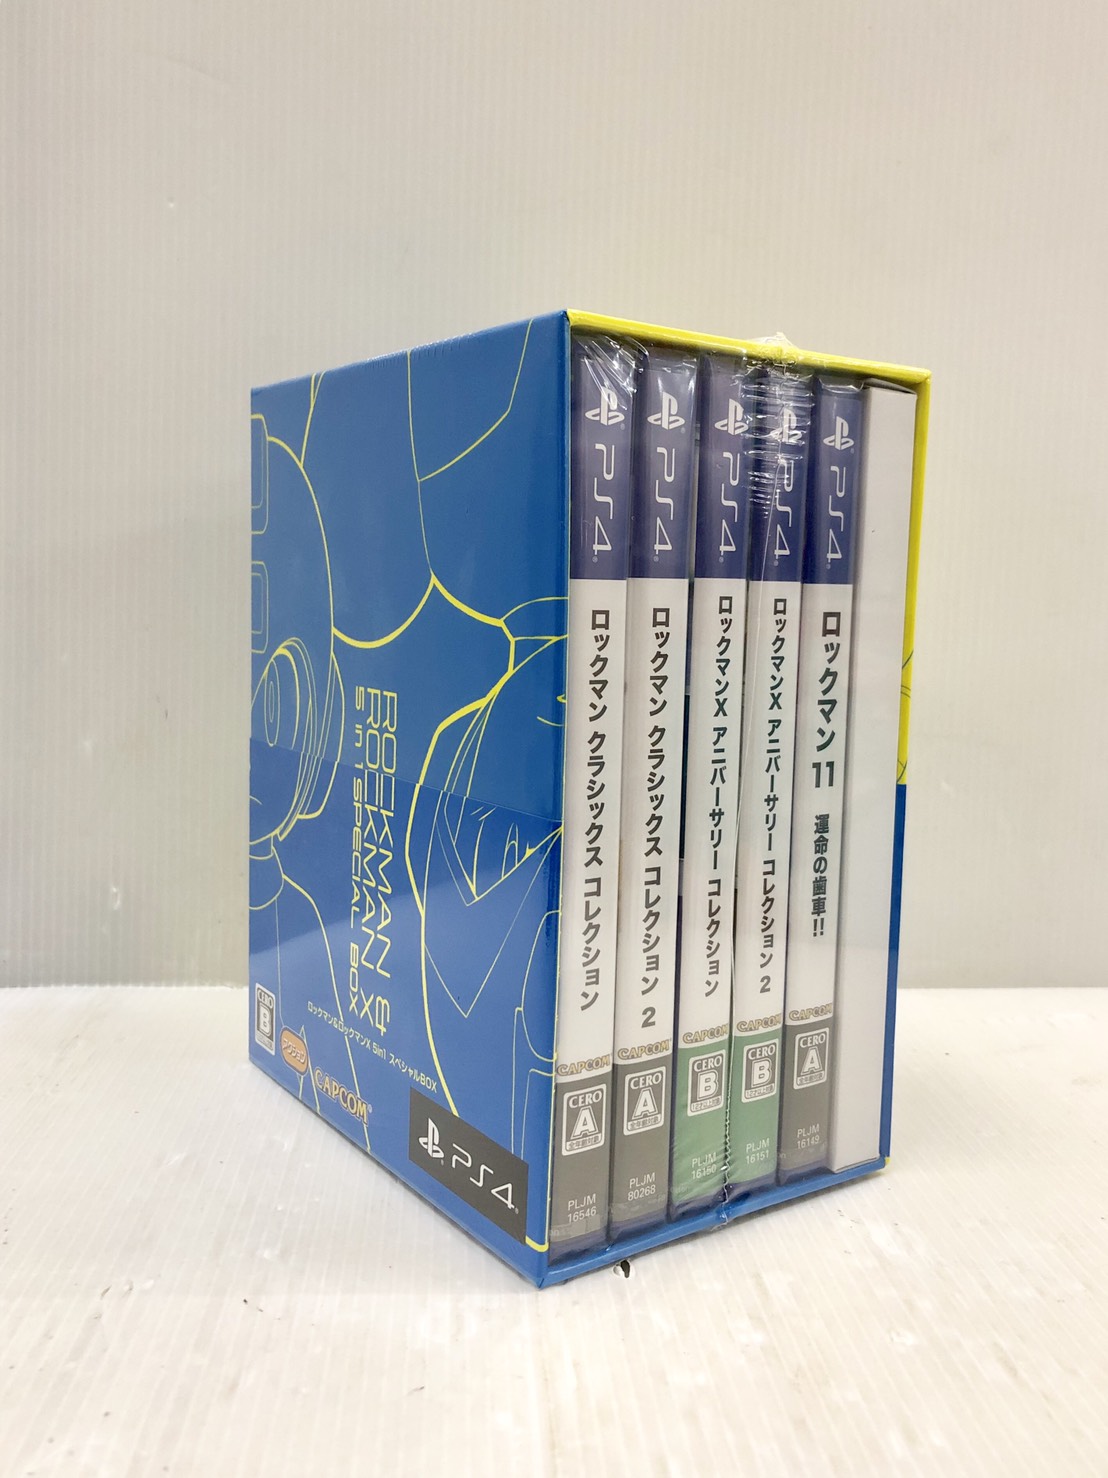 【数量は多】  5in1スペシャルBOX ロックマン&ロックマンX PS4 家庭用ゲームソフト